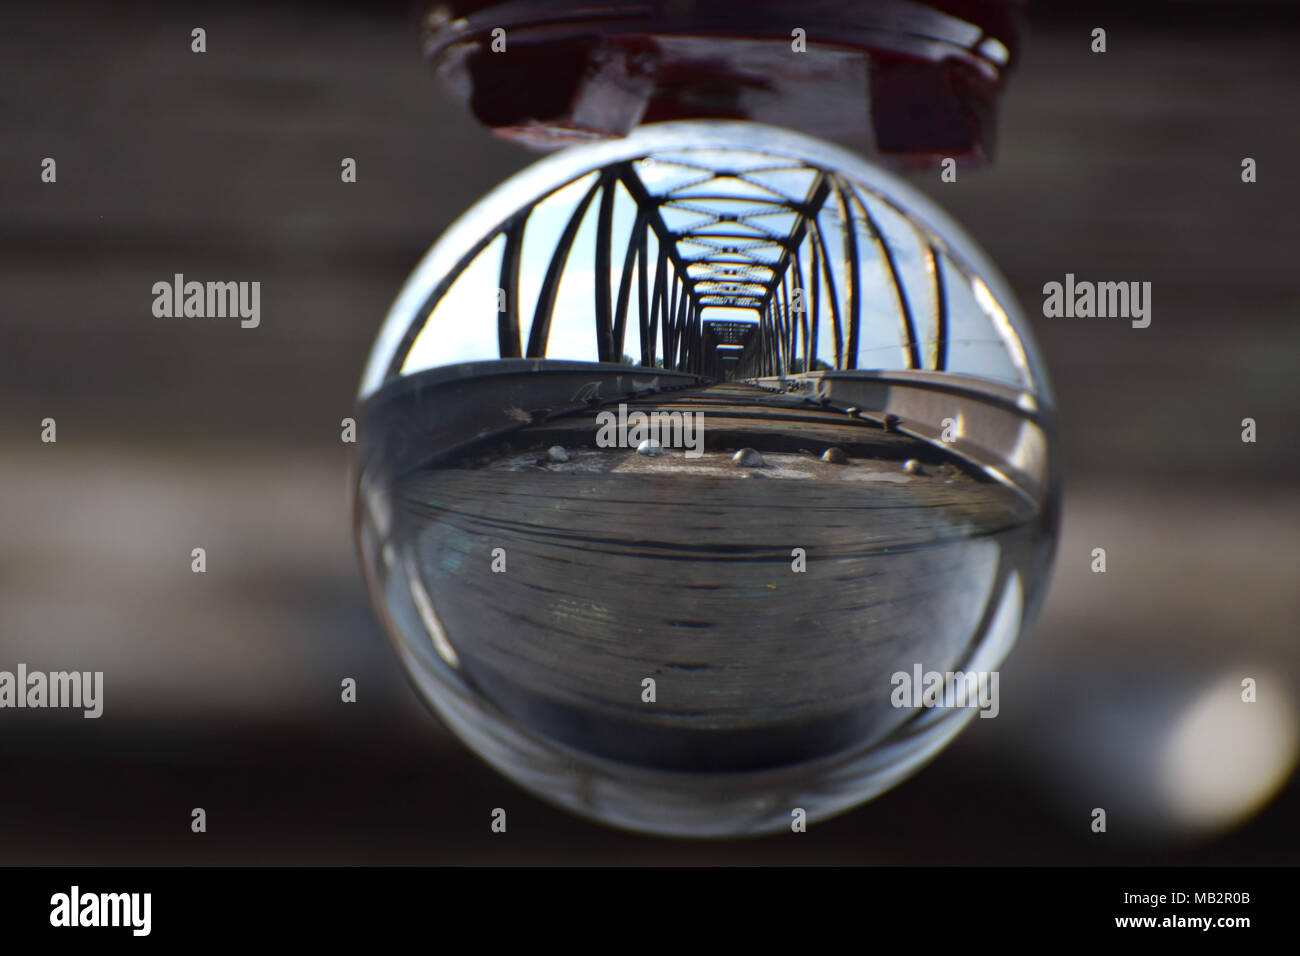 Una vía de ferrocarril y el puente vistos a través de una bola de cristal. Una metáfora visual para la visión, moviéndose hacia adelante mientras se aloja en la vía y el cruce de puentes. Foto de stock